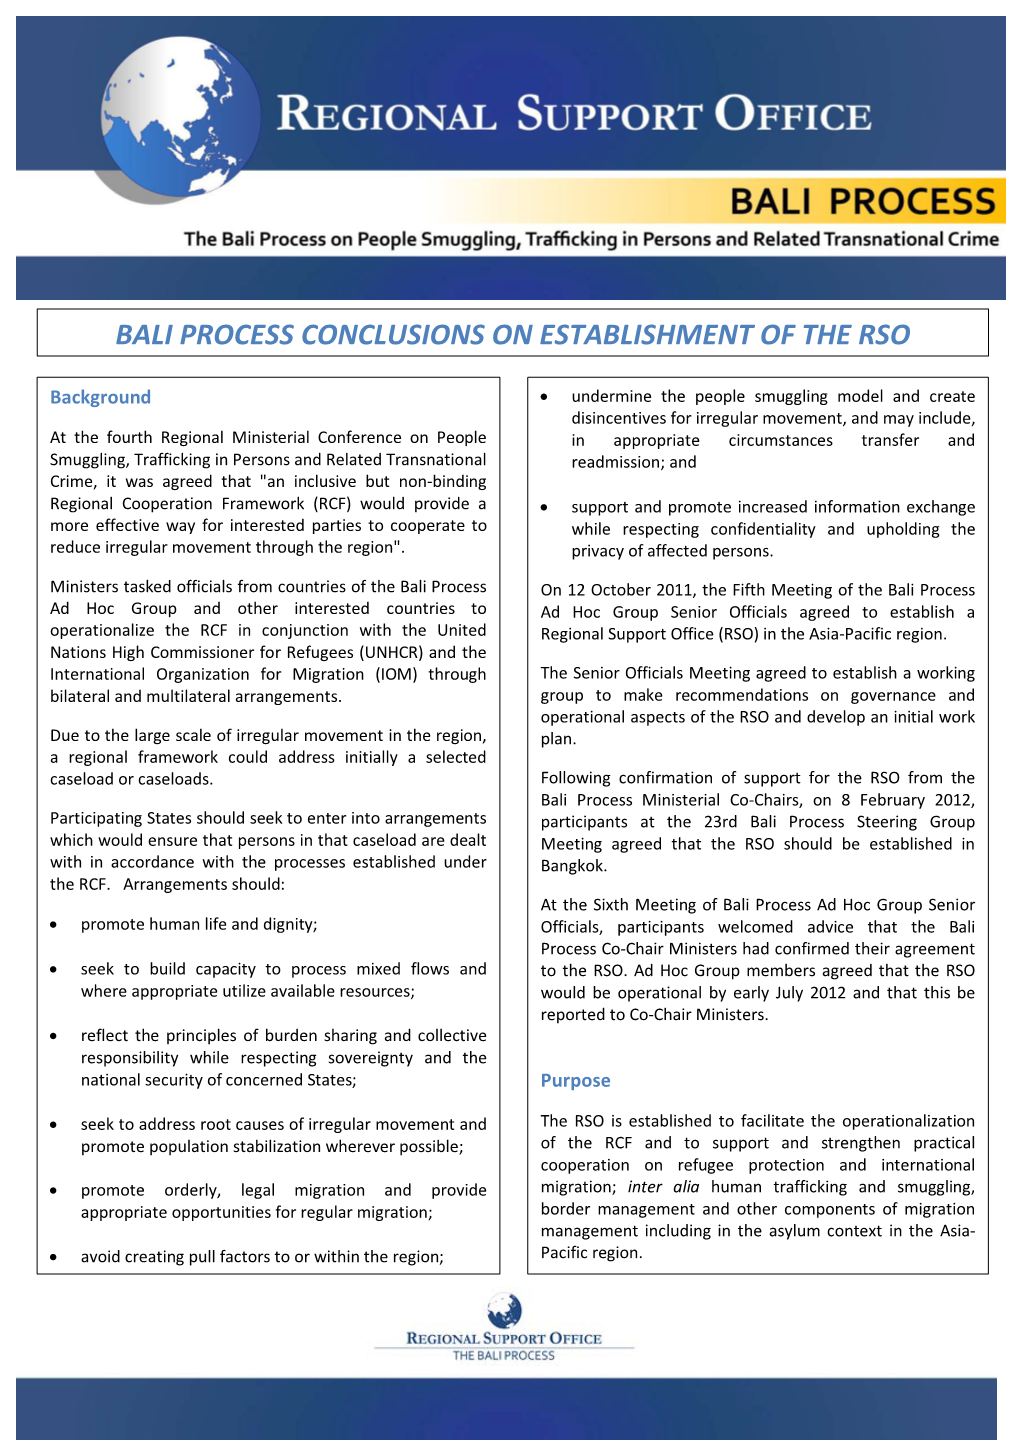 Bali Process Conclusions on Establishment of the Rso